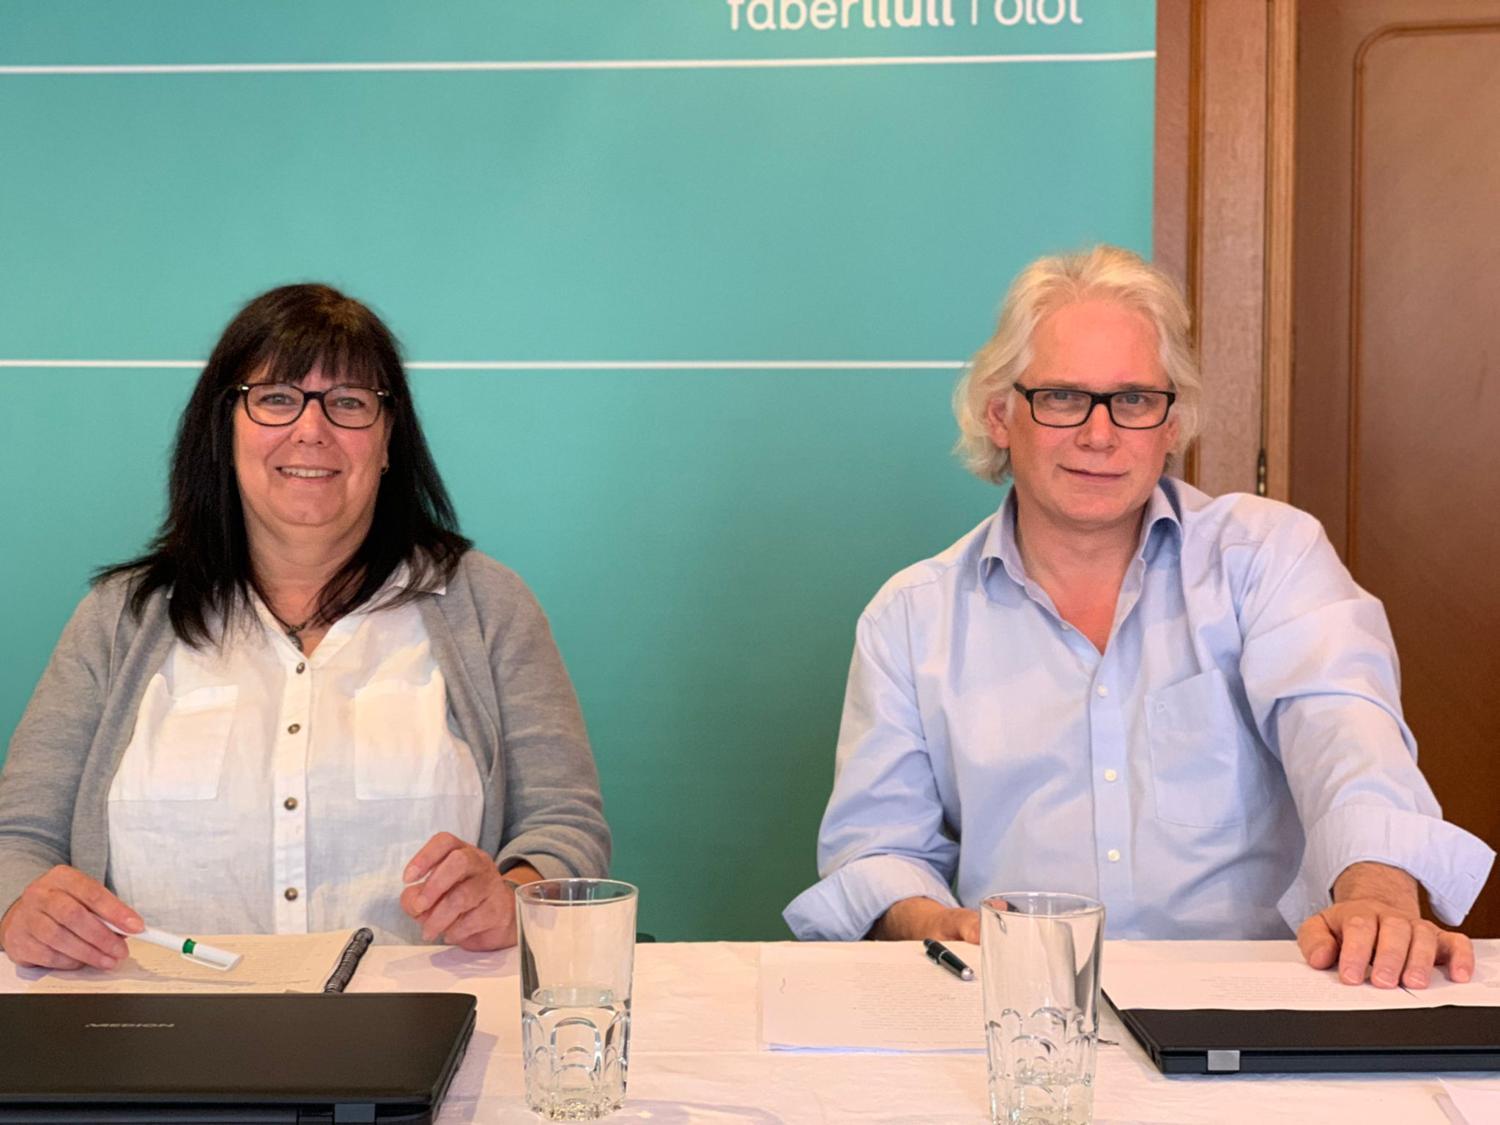 Sessió de treball a càrrec d'Ursula Bachhausen i Frank Henseleit